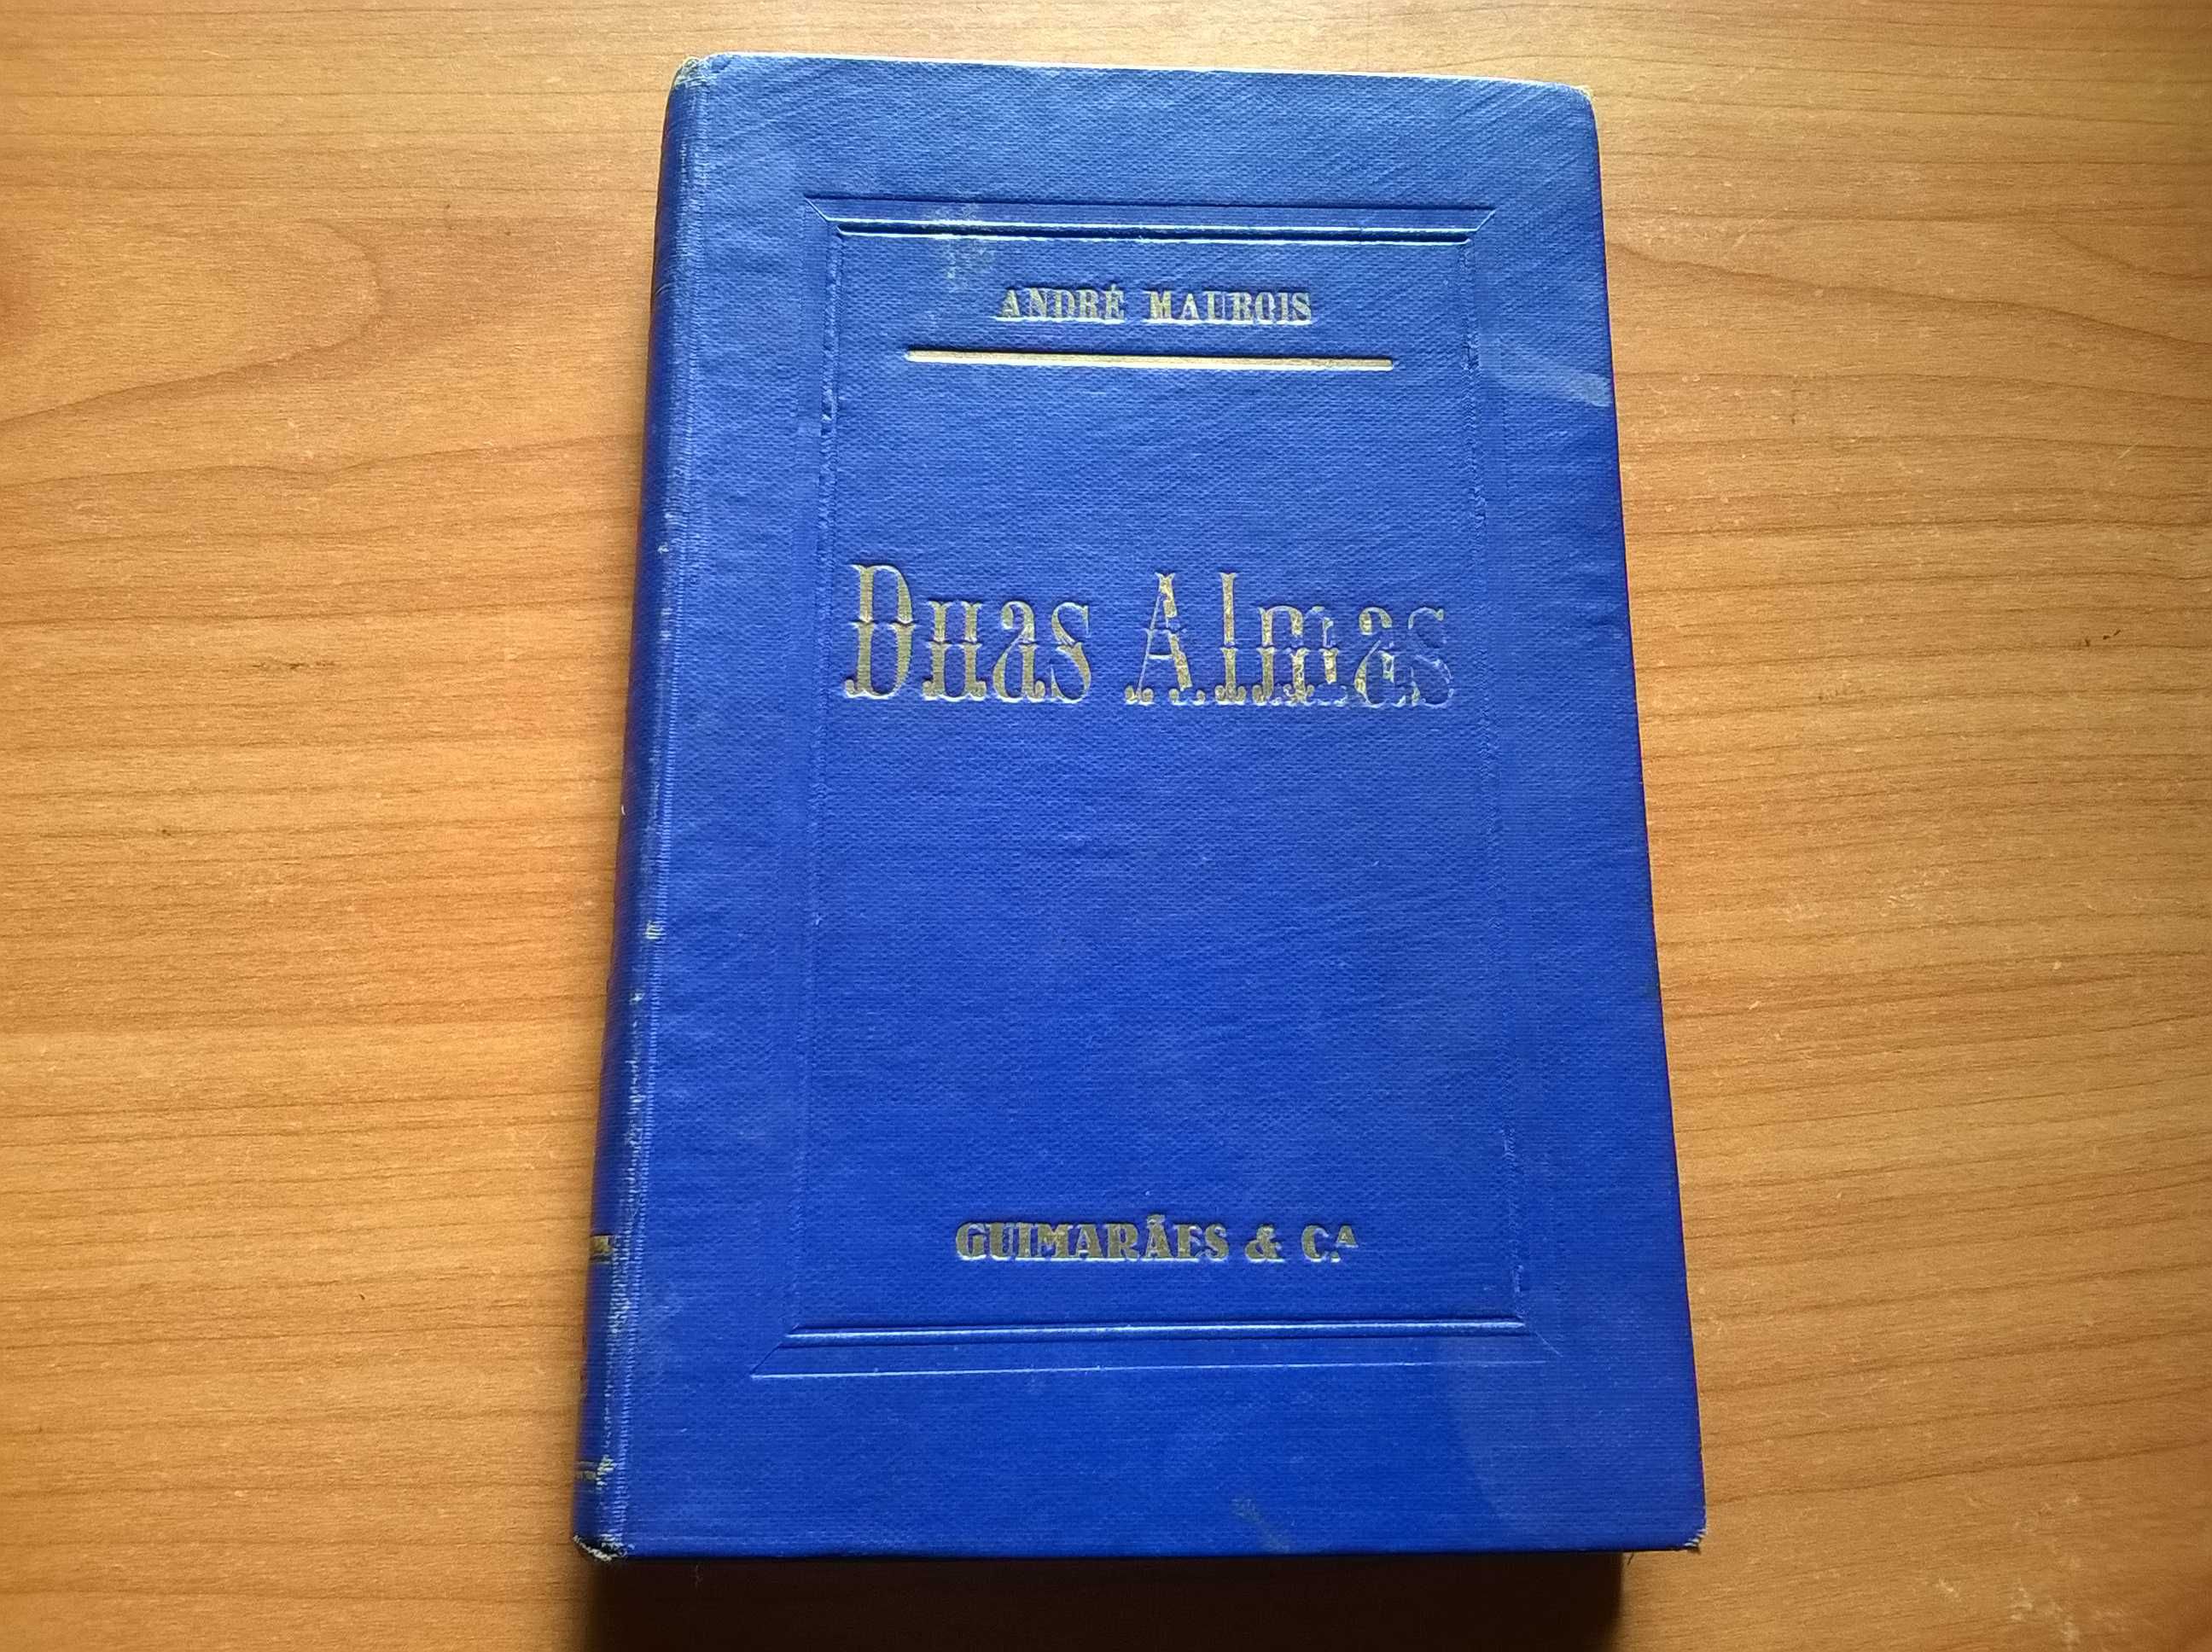 " Duas Almas " - André Maurois (portes grátis)